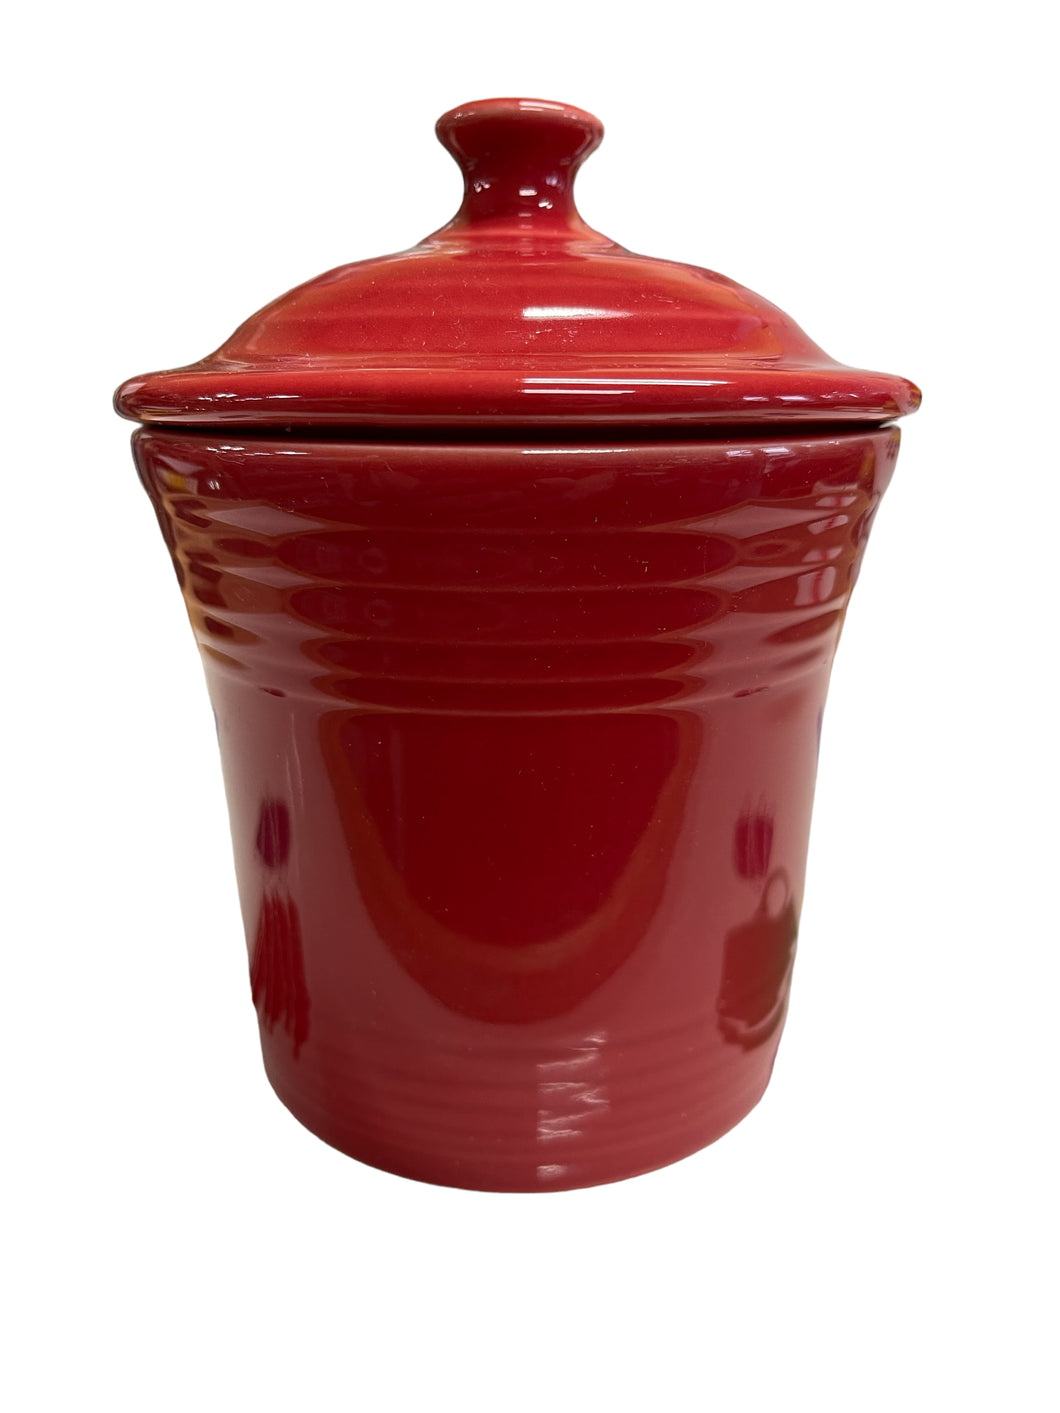 Fiesta Scarlet Jam Jar / Grease Jar